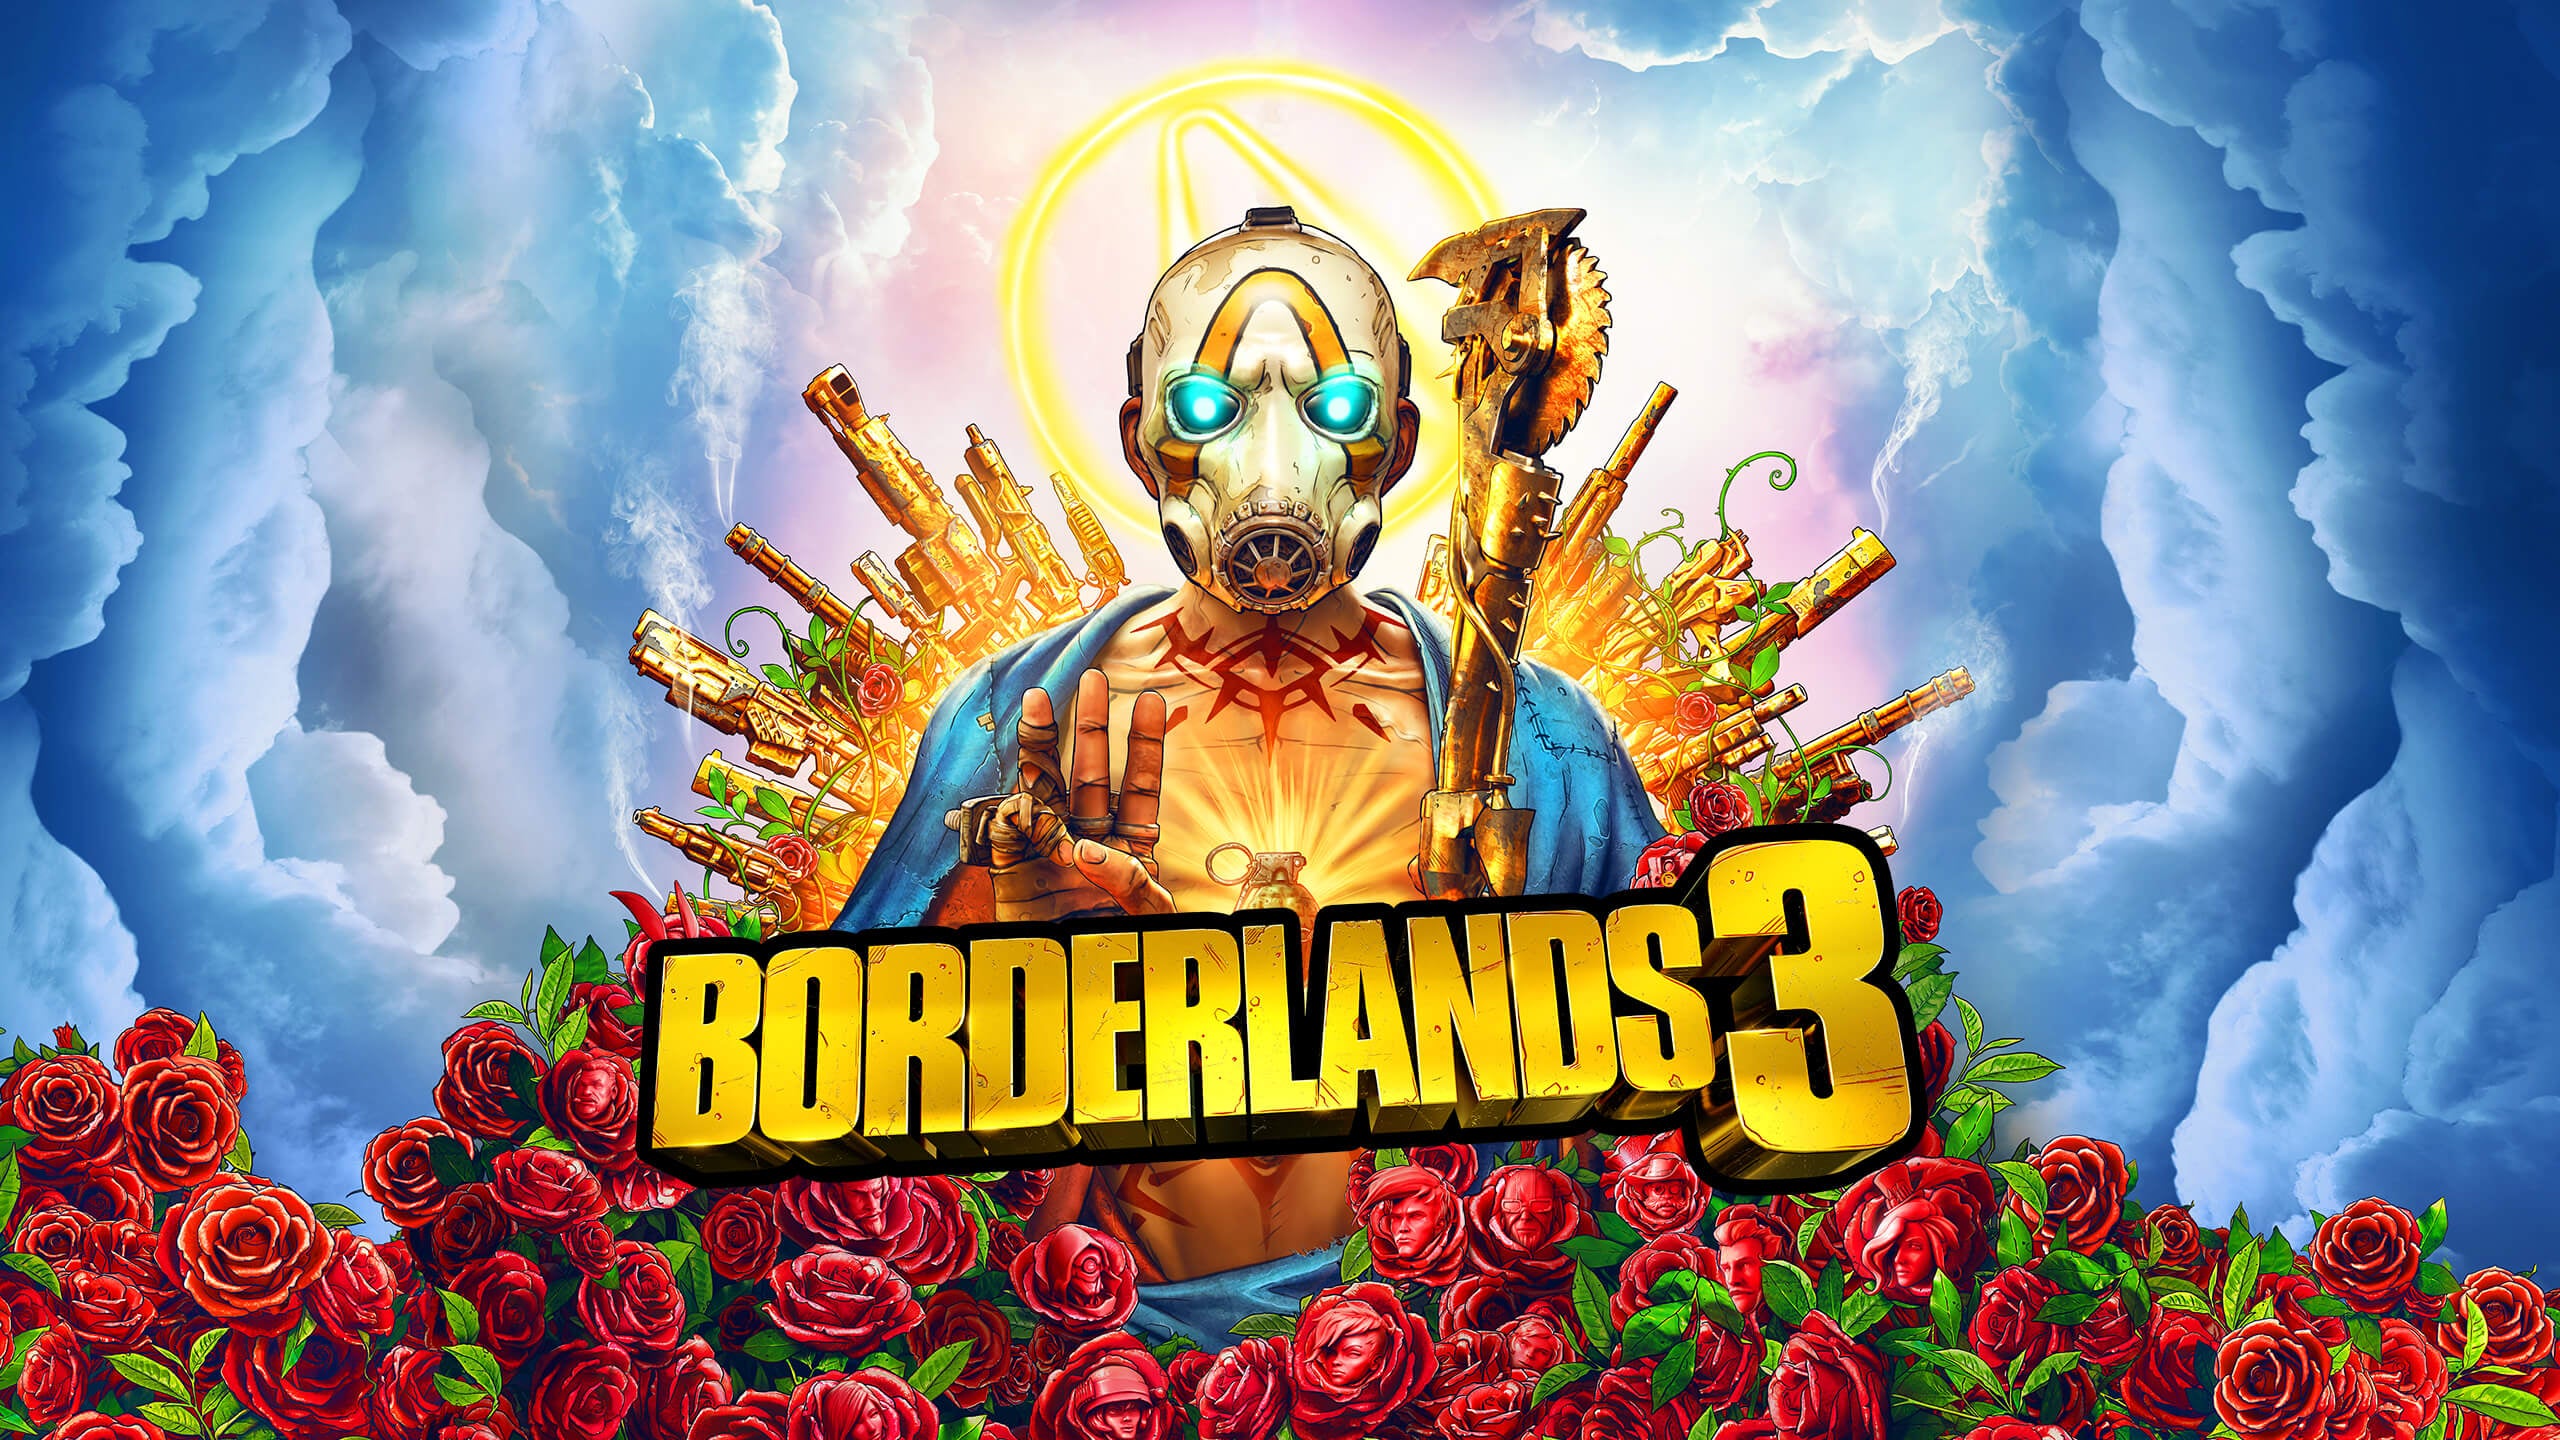 Imagem para Borderlands 3 está gratuito na Epic Games Store